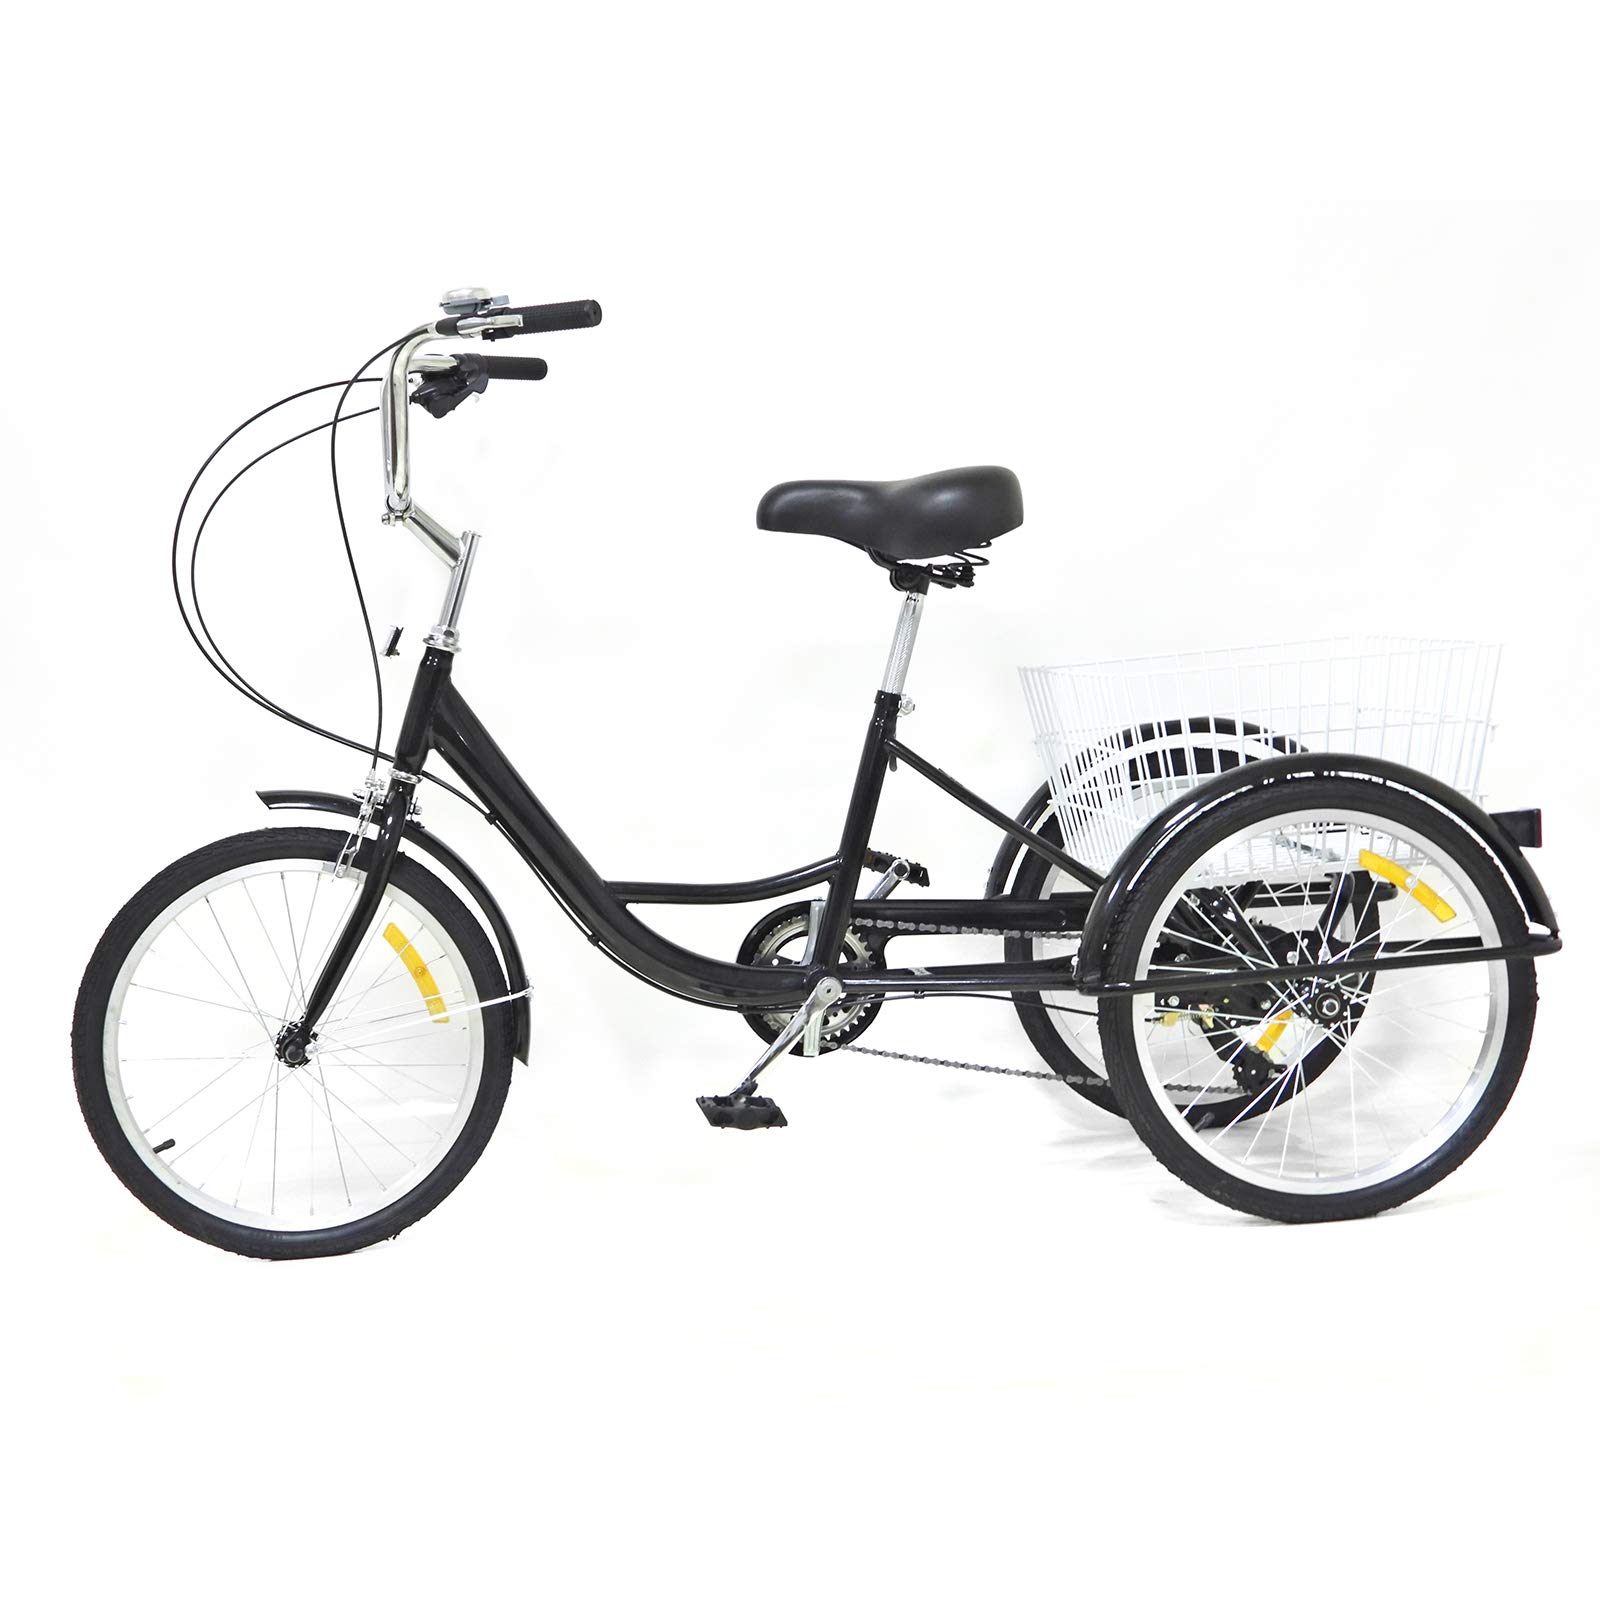 Ethedeal 20 Zoll Dreirad für Erwachsene mit Einkaufskorb, 3-Rad Fahrräder 8 Gange Dreirad für Senioren, für Adult Tricycle Comfort Fahrrad für Outdoor Sports Shopping (Schwarz)